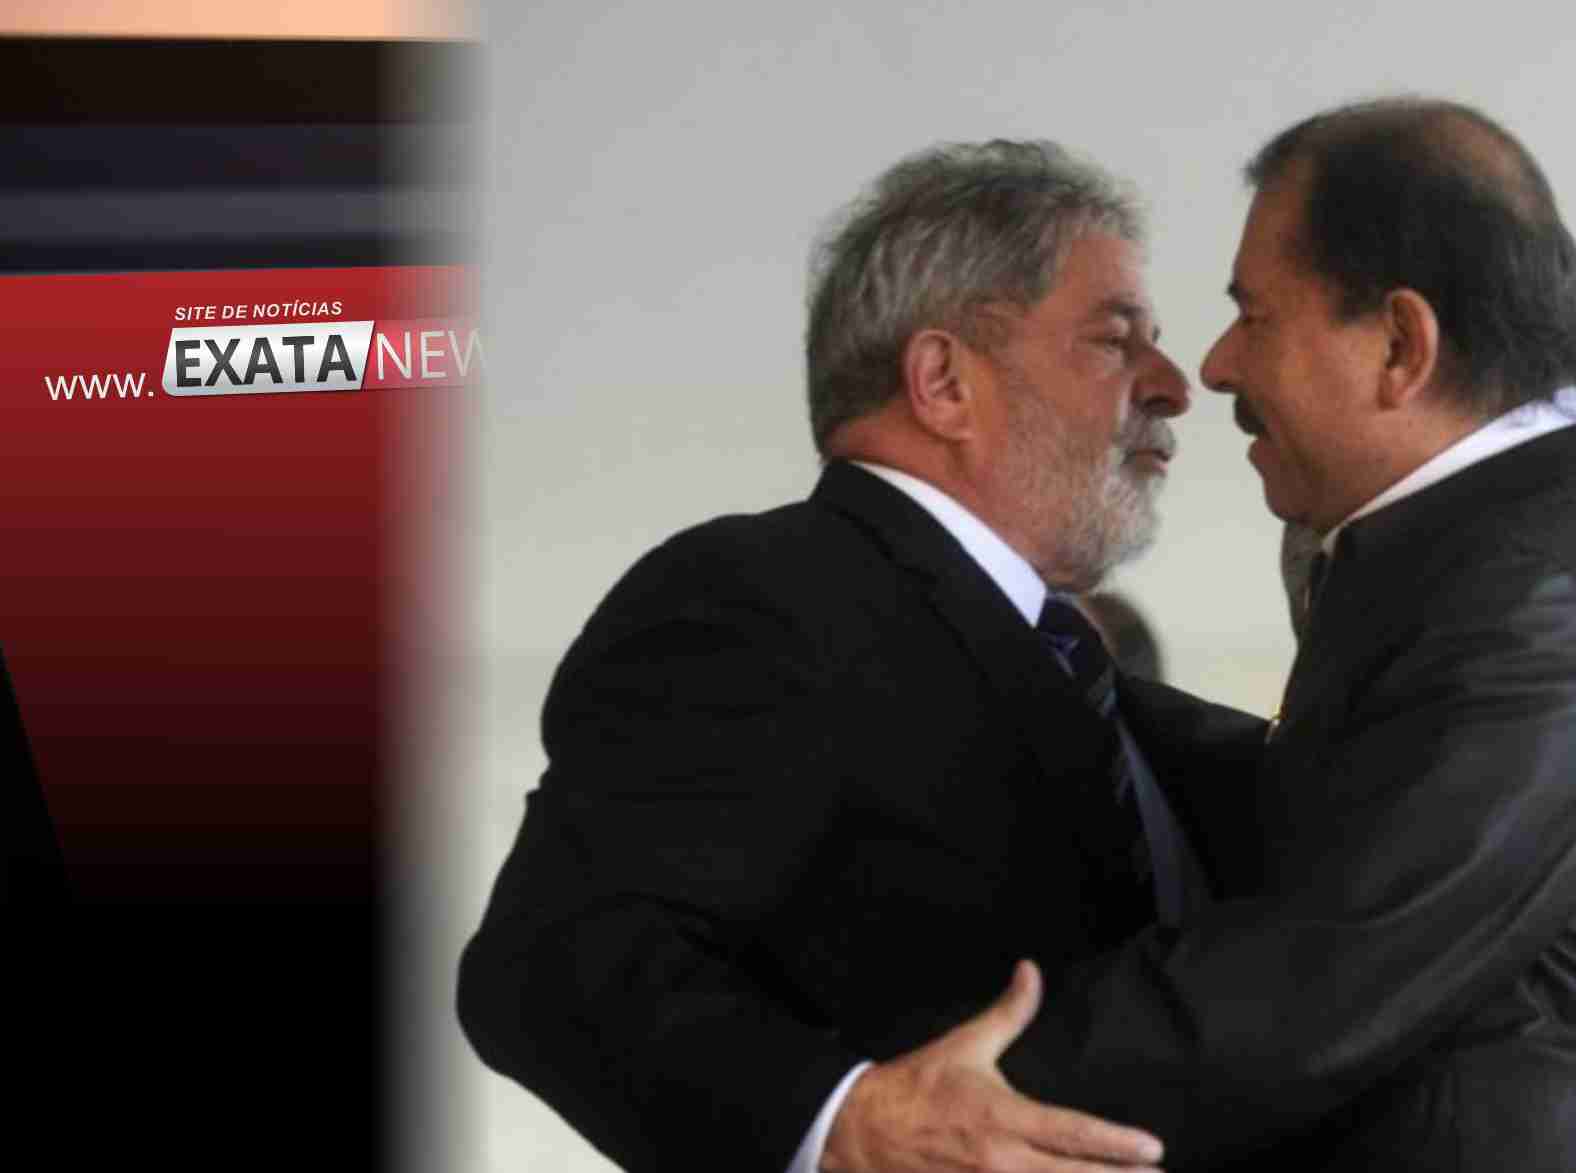 Aliado político de Maduro e Ortega, Lula fala em ‘não sair mais’ do poder